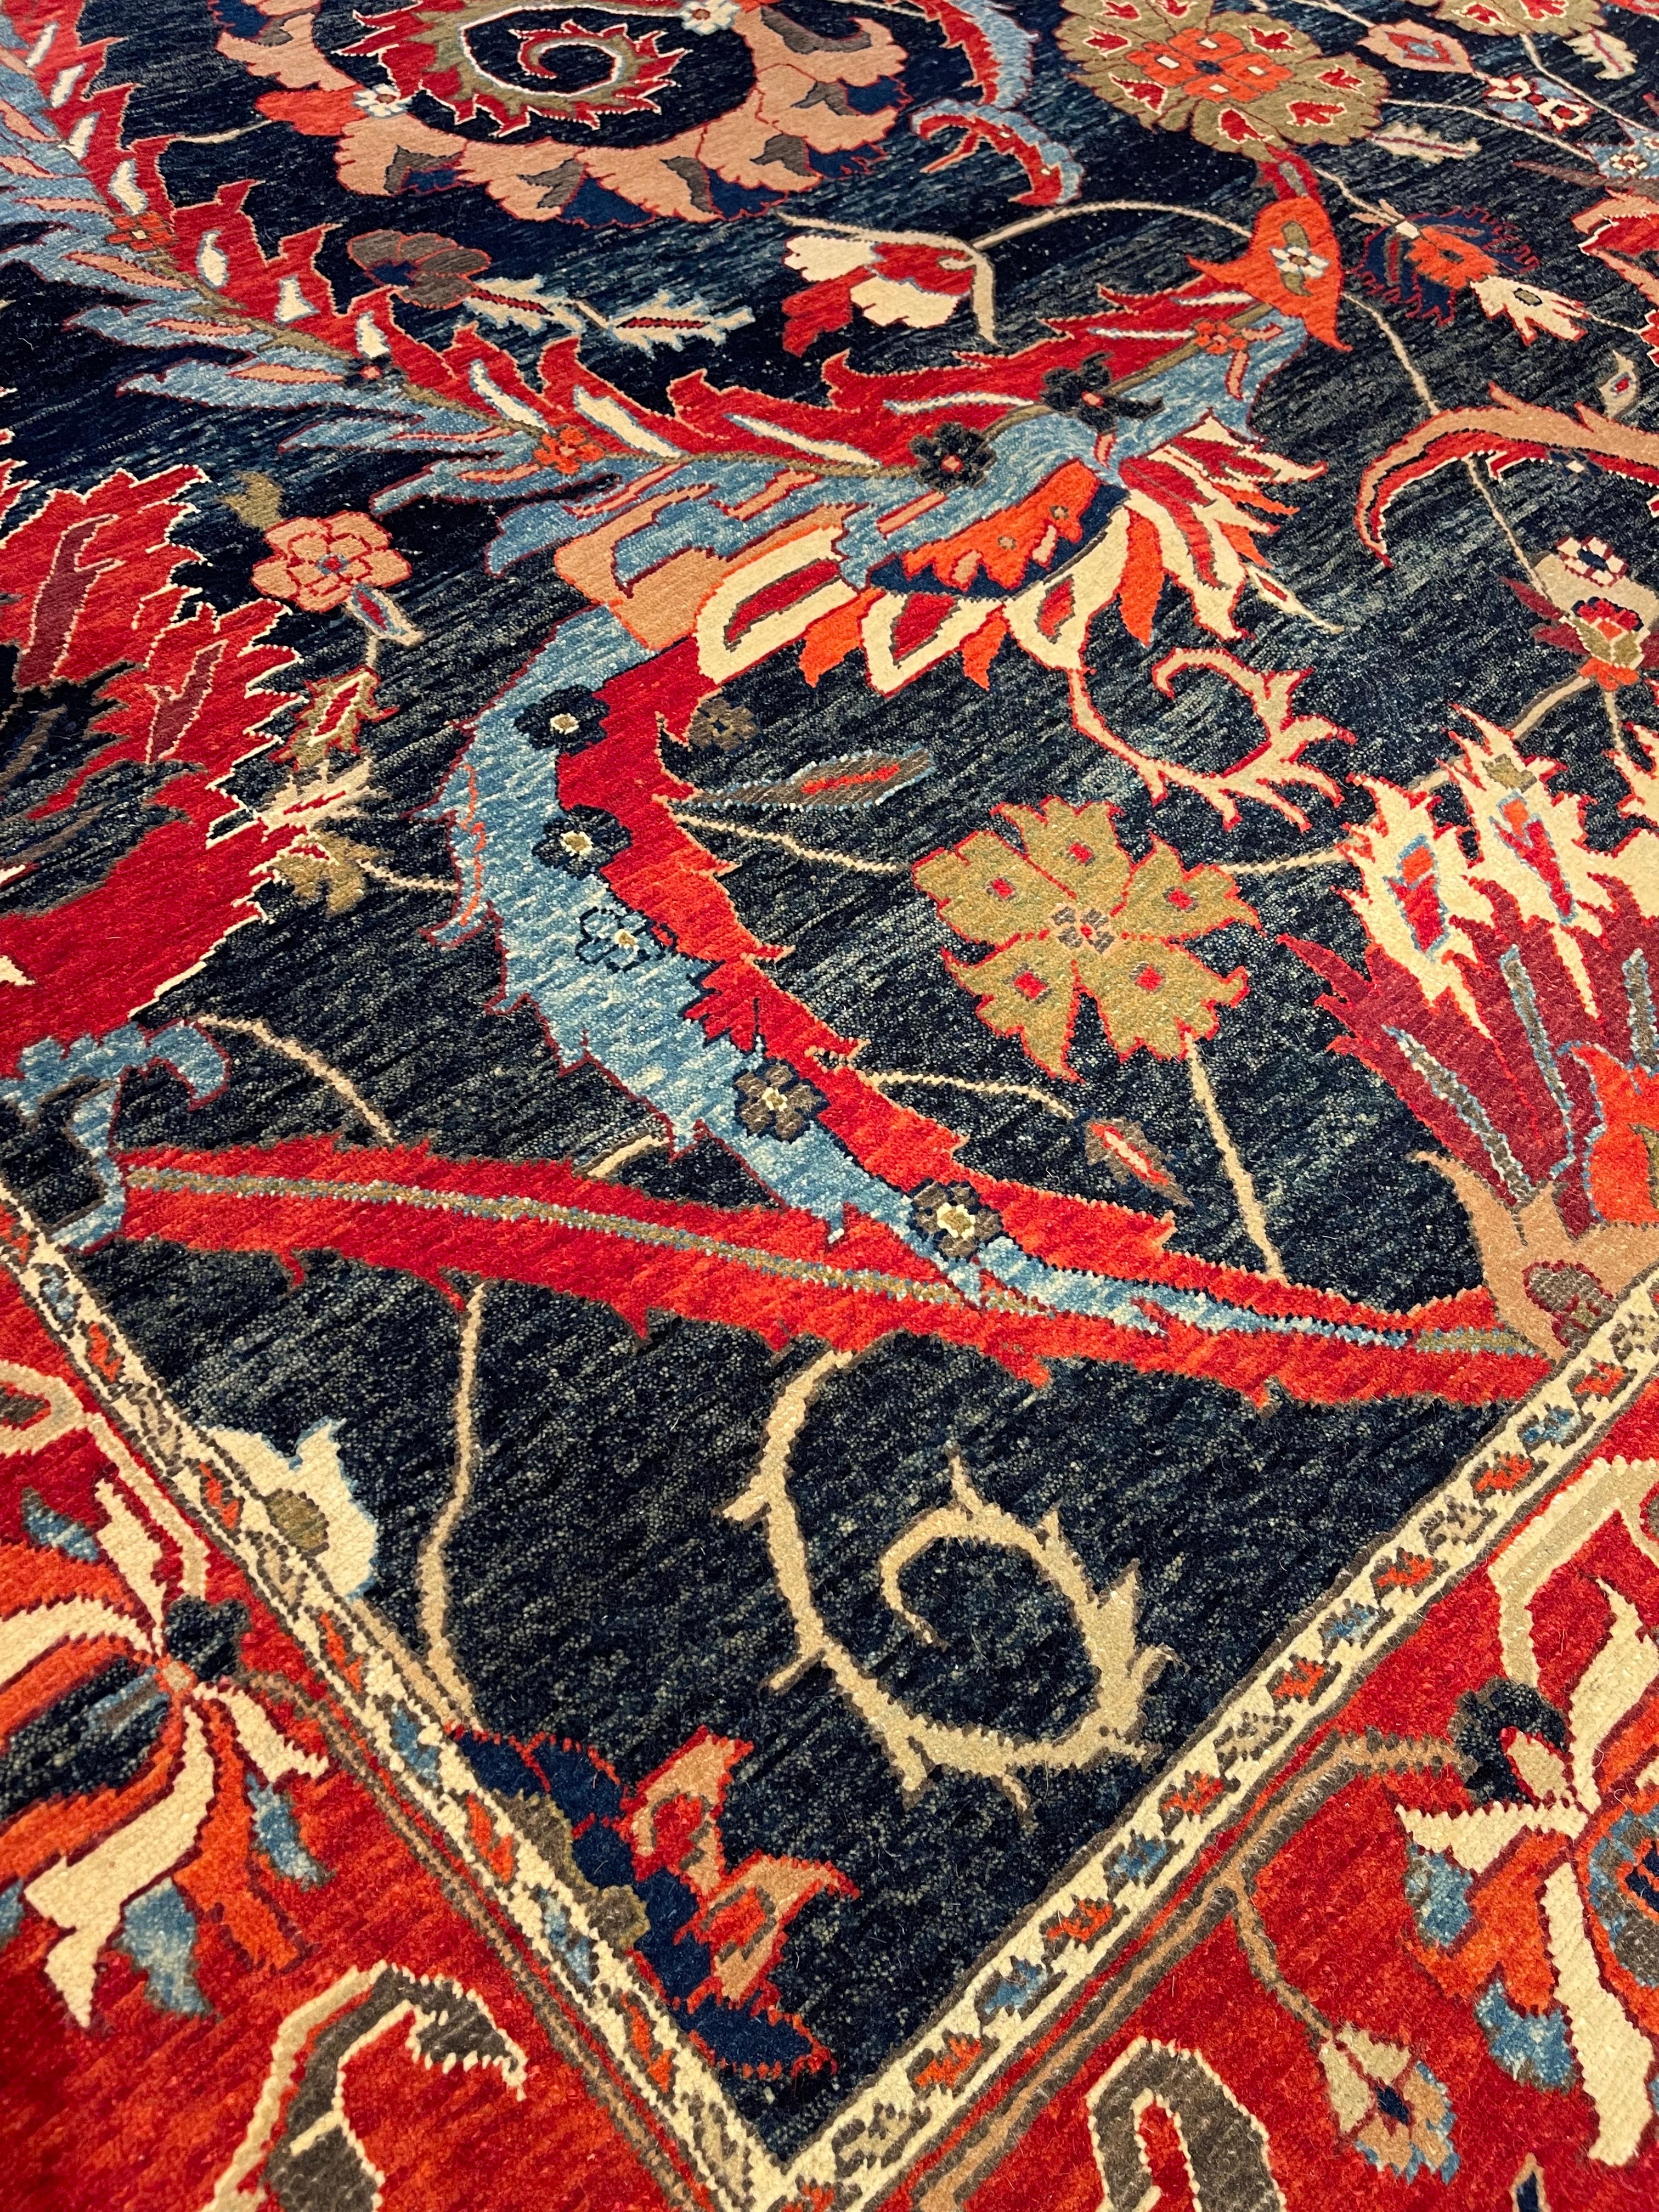 Die Quelle des Teppichs stammt aus dem Buch Museo Calouste Gulbenkian, gedruckt vom Gulbenkian Museum Lissabon, 2015, Nr. 52. Dies ist ein vasentechnisches Teppichdesign aus dem 17. Jahrhundert in der Region Kerman in Persien. Im 16. Jahrhundert